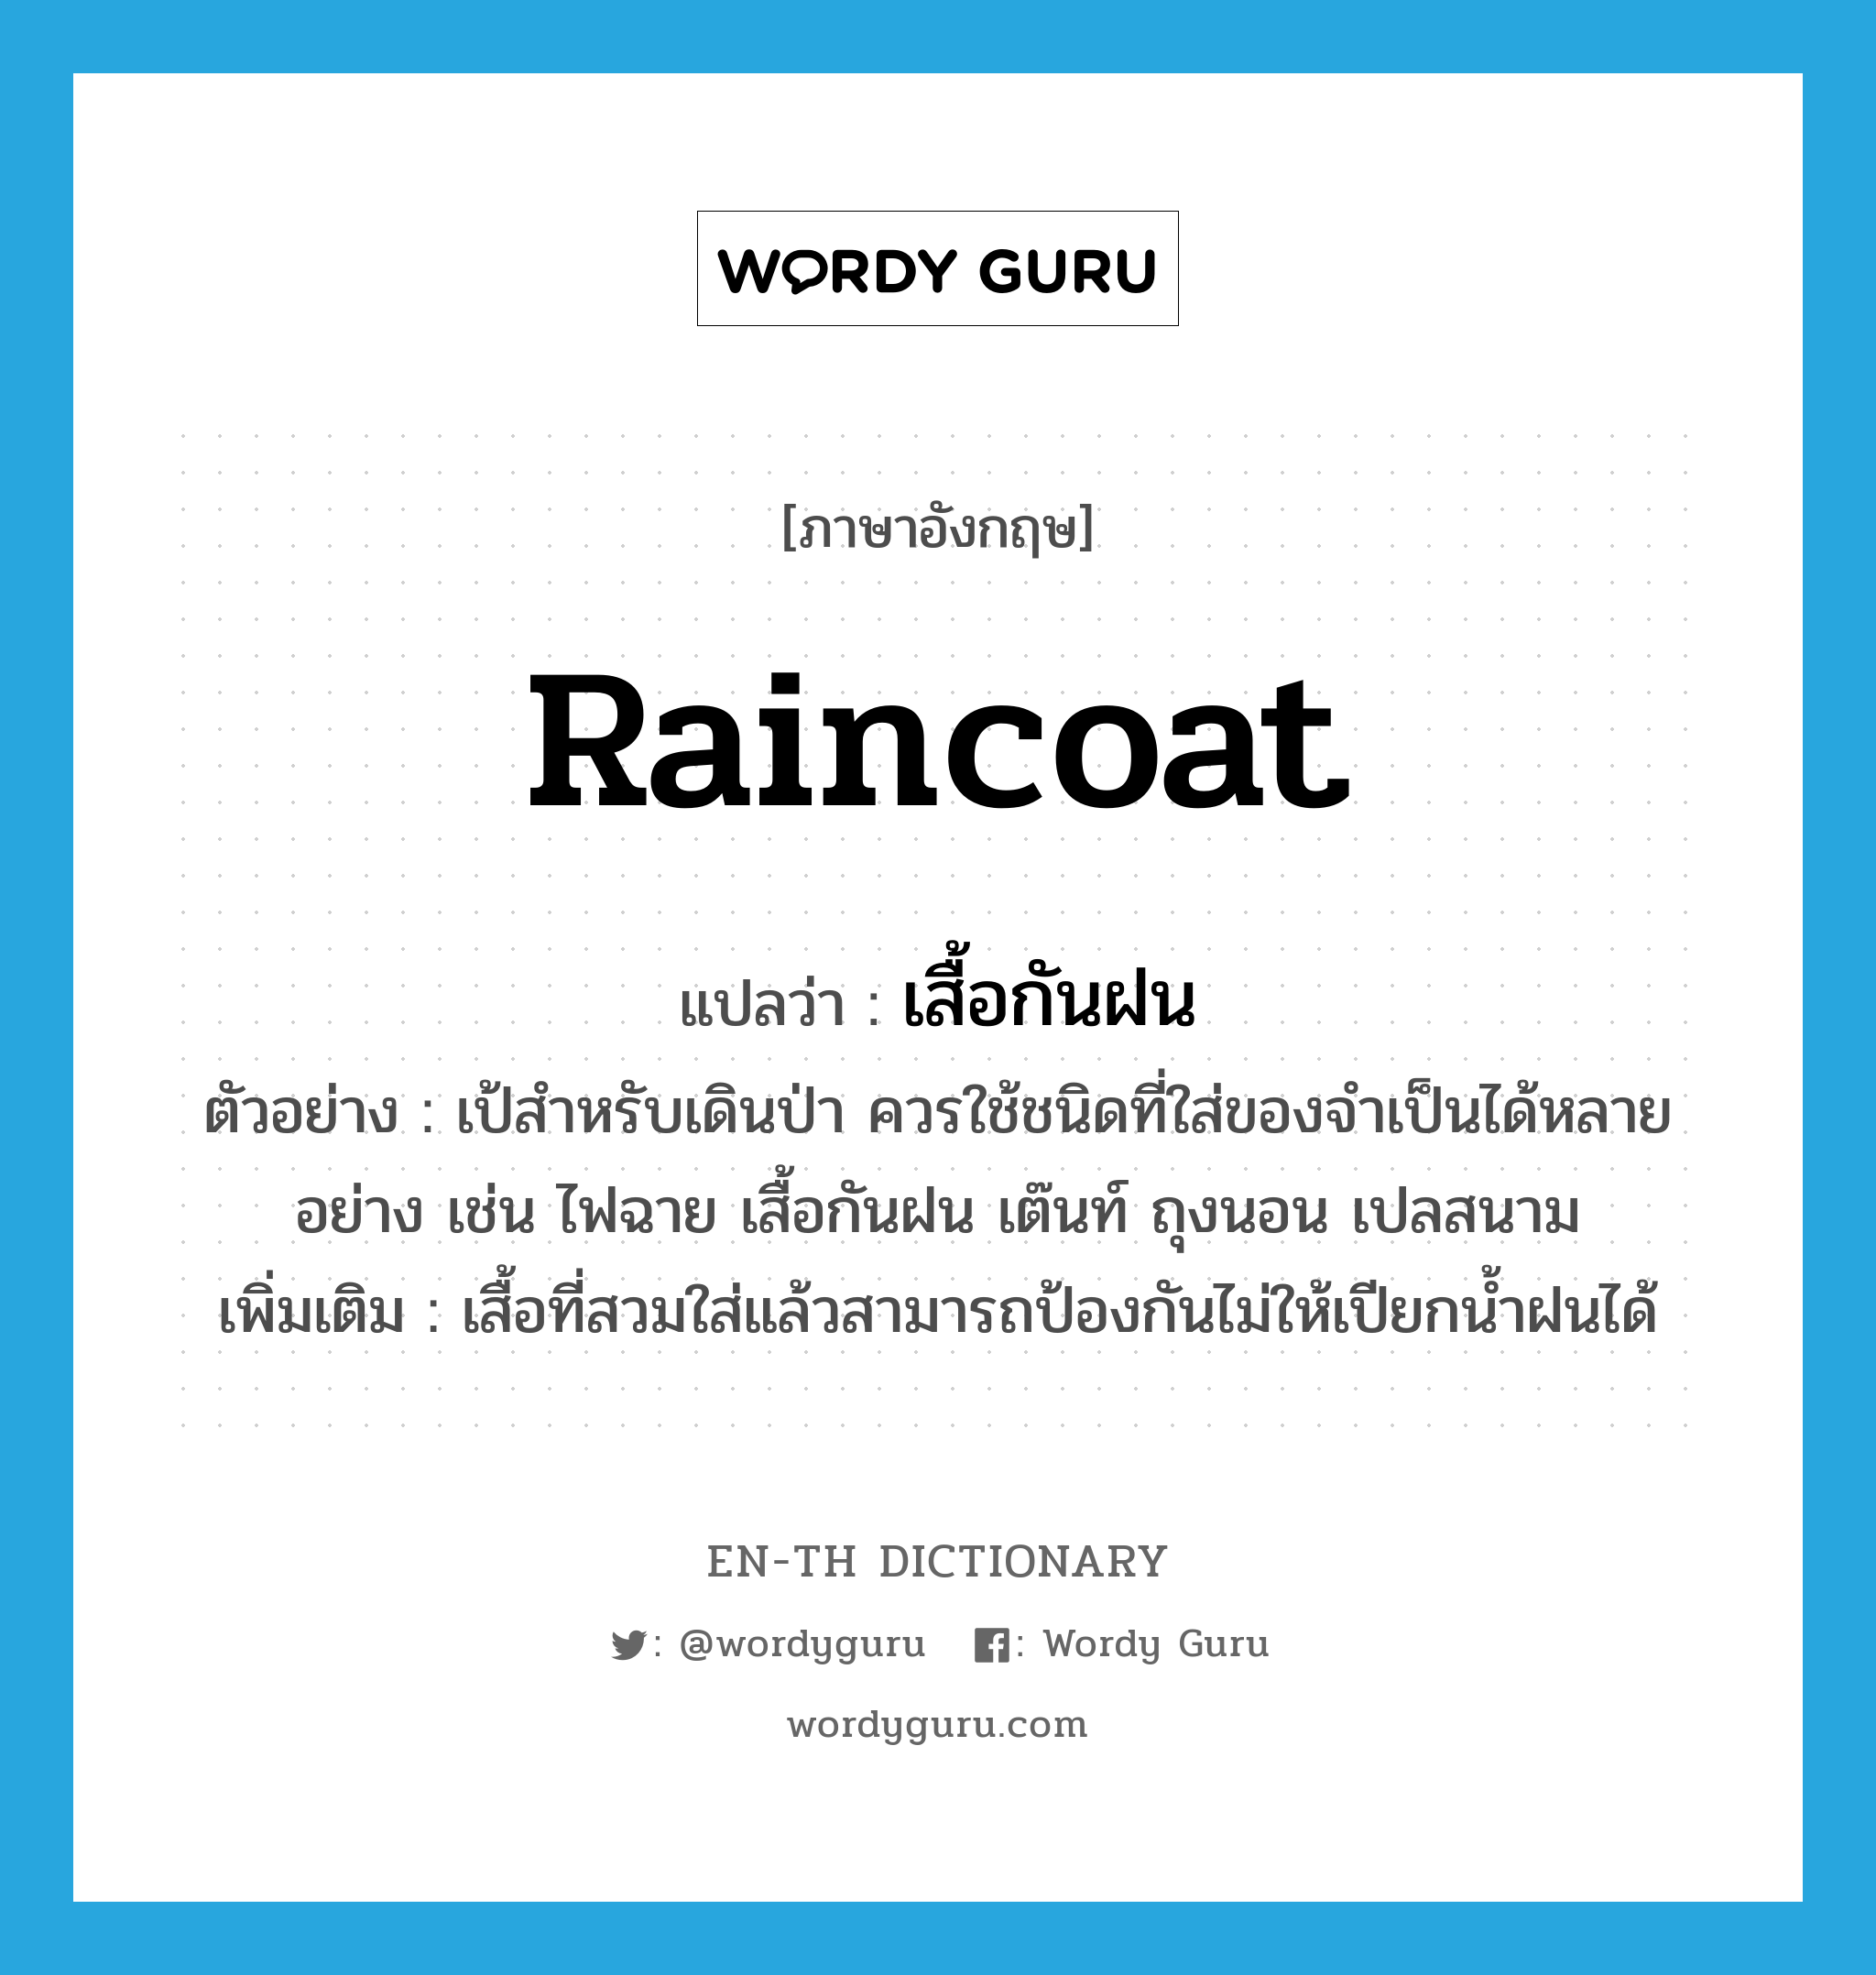 raincoat แปลว่า?, คำศัพท์ภาษาอังกฤษ raincoat แปลว่า เสื้อกันฝน ประเภท N ตัวอย่าง เป้สำหรับเดินป่า ควรใช้ชนิดที่ใส่ของจำเป็นได้หลายอย่าง เช่น ไฟฉาย เสื้อกันฝน เต๊นท์ ถุงนอน เปลสนาม เพิ่มเติม เสื้อที่สวมใส่แล้วสามารถป้องกันไม่ให้เปียกน้ำฝนได้ หมวด N